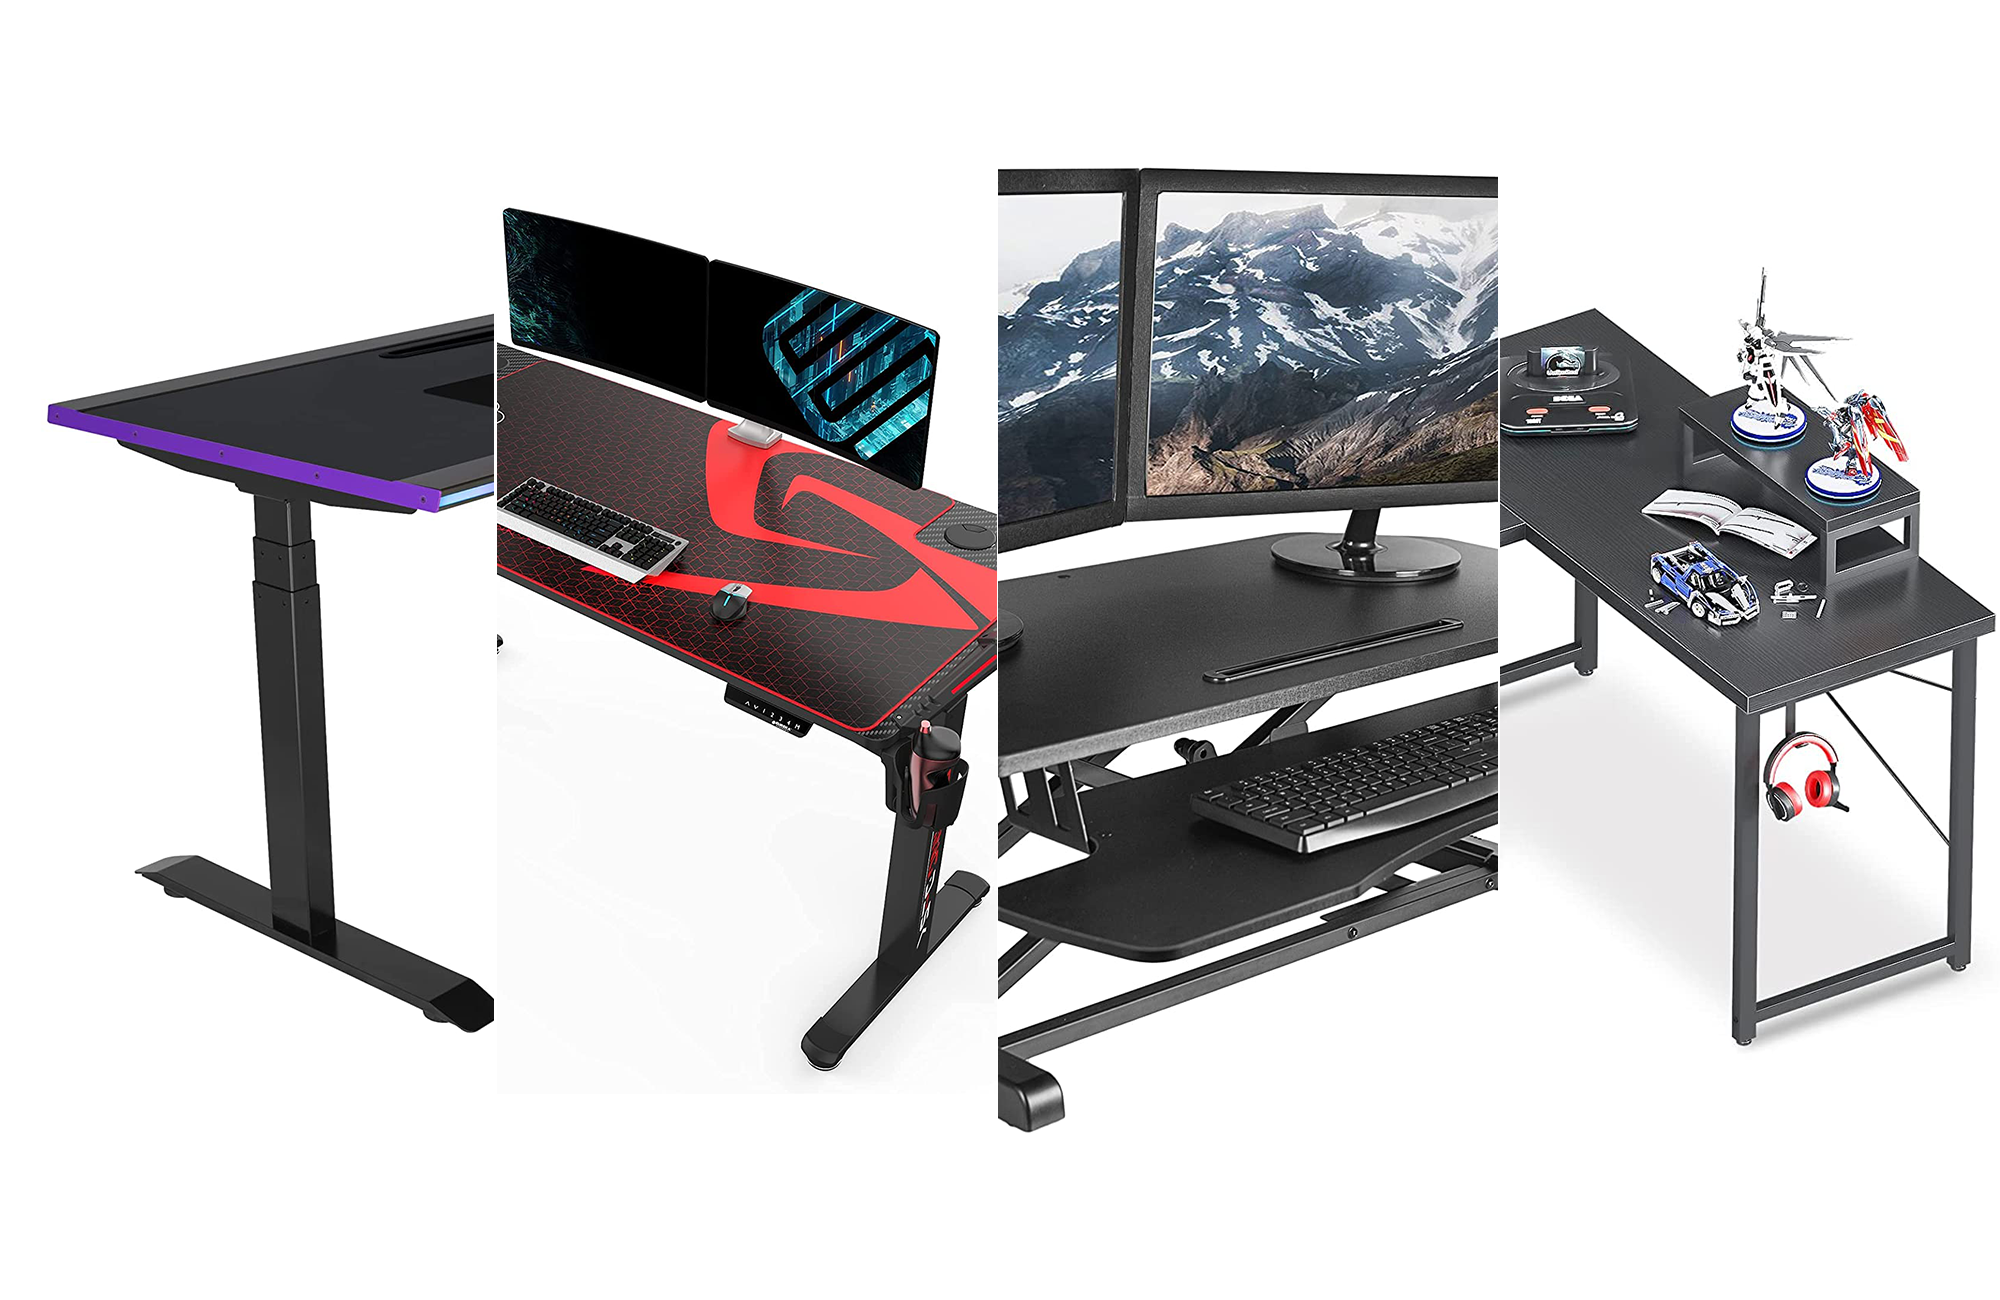 https://www.popsci.com/uploads/2022/05/10/best-gaming-desks.png?auto=webp